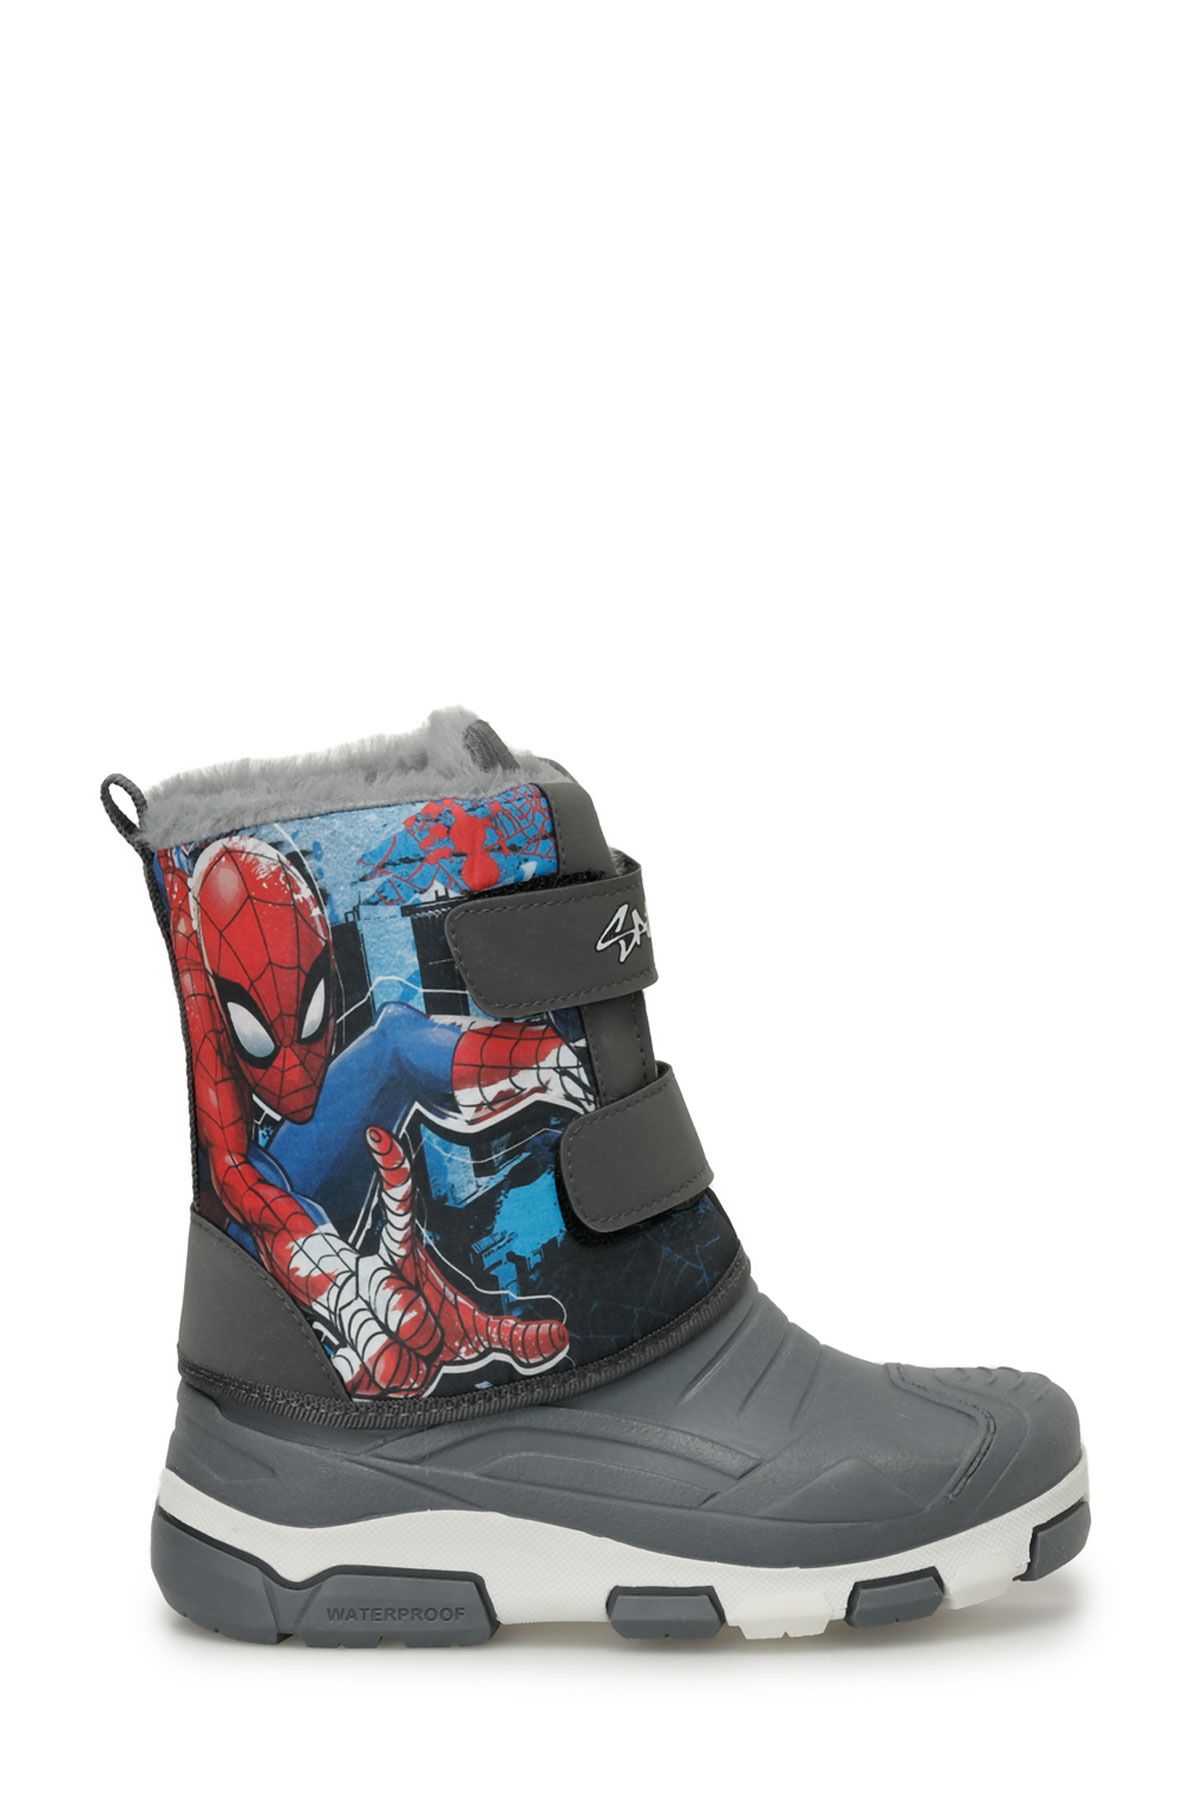 Spiderman Mapto.F3pr grı erkek çocuk çizme